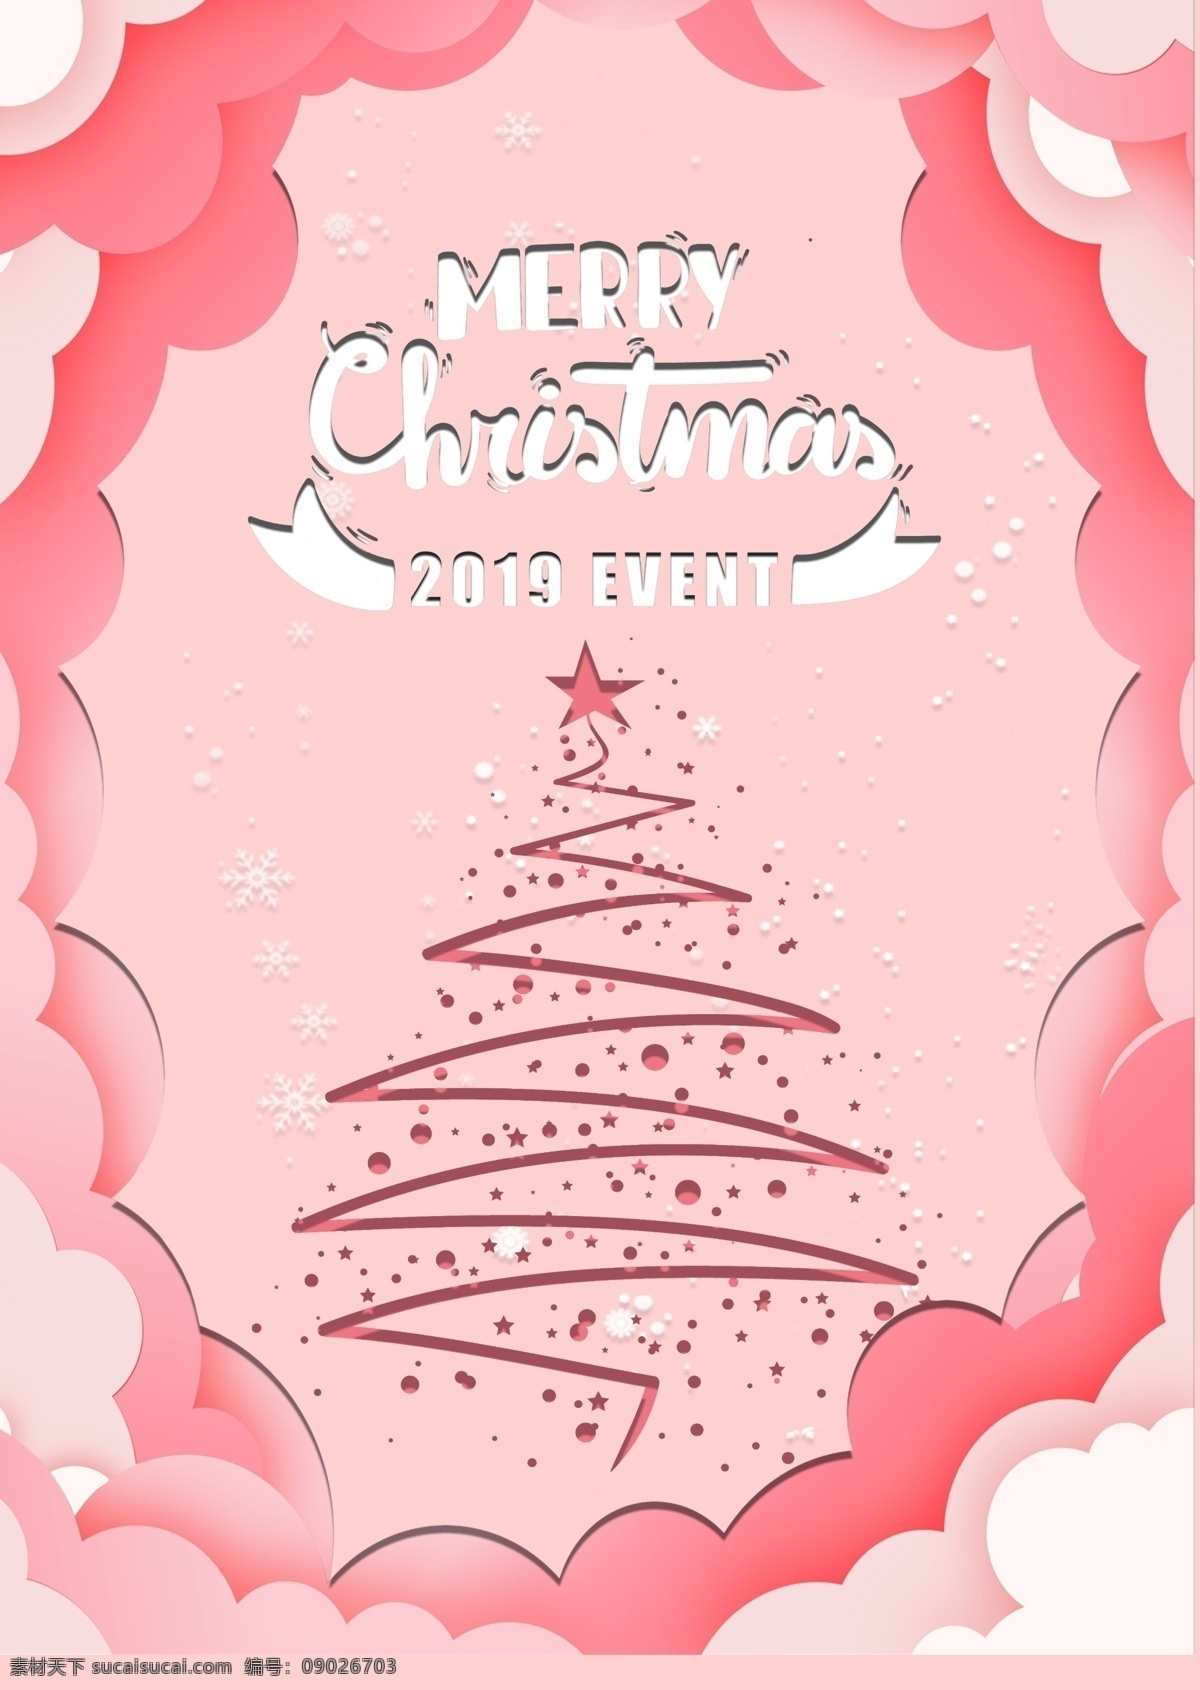 粉红色 2019 英文 圣诞树 电池 海报 简单 可爱 雪花儿 星星 圣光 五彩缤纷 清臣 颜色粉色 怀特饼干